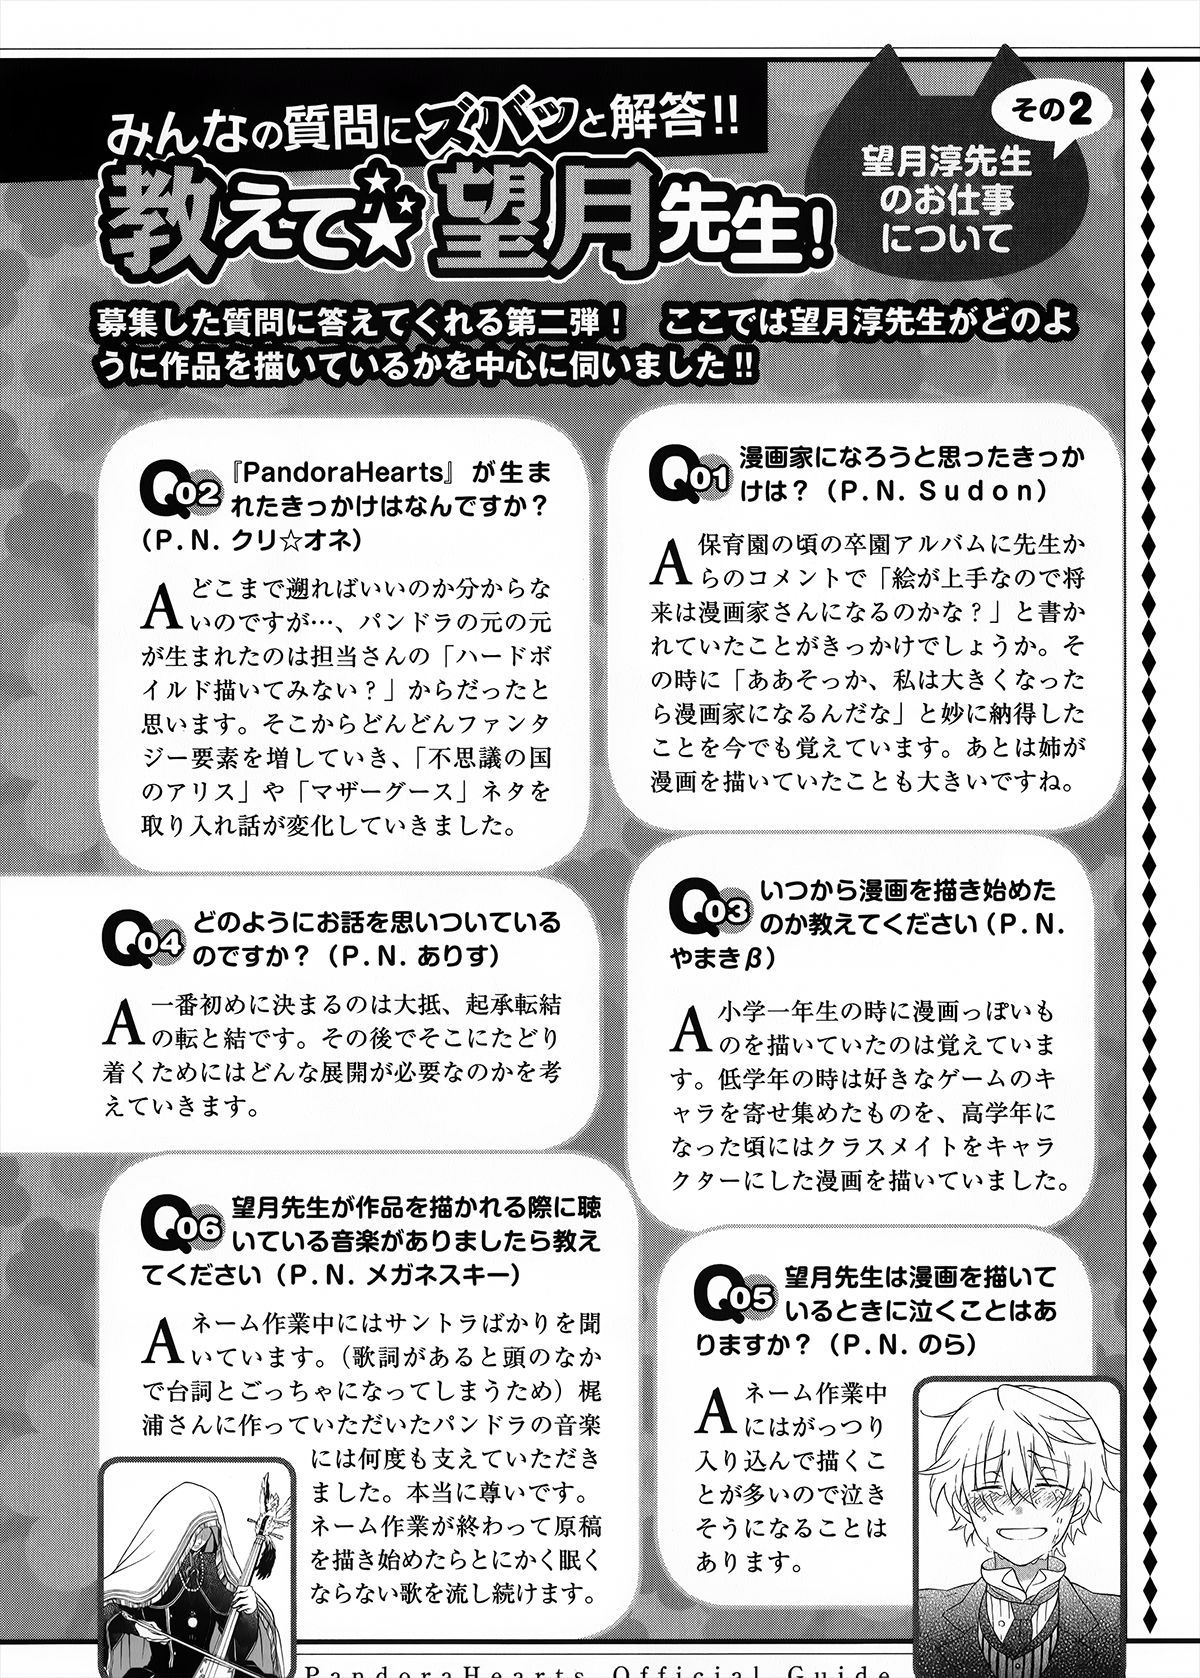 Pandora Hearts Guidebook 24+1: Last Dance パンドラハーツ オフィシャルガイド 24 + 1 ~Last Dance! 182